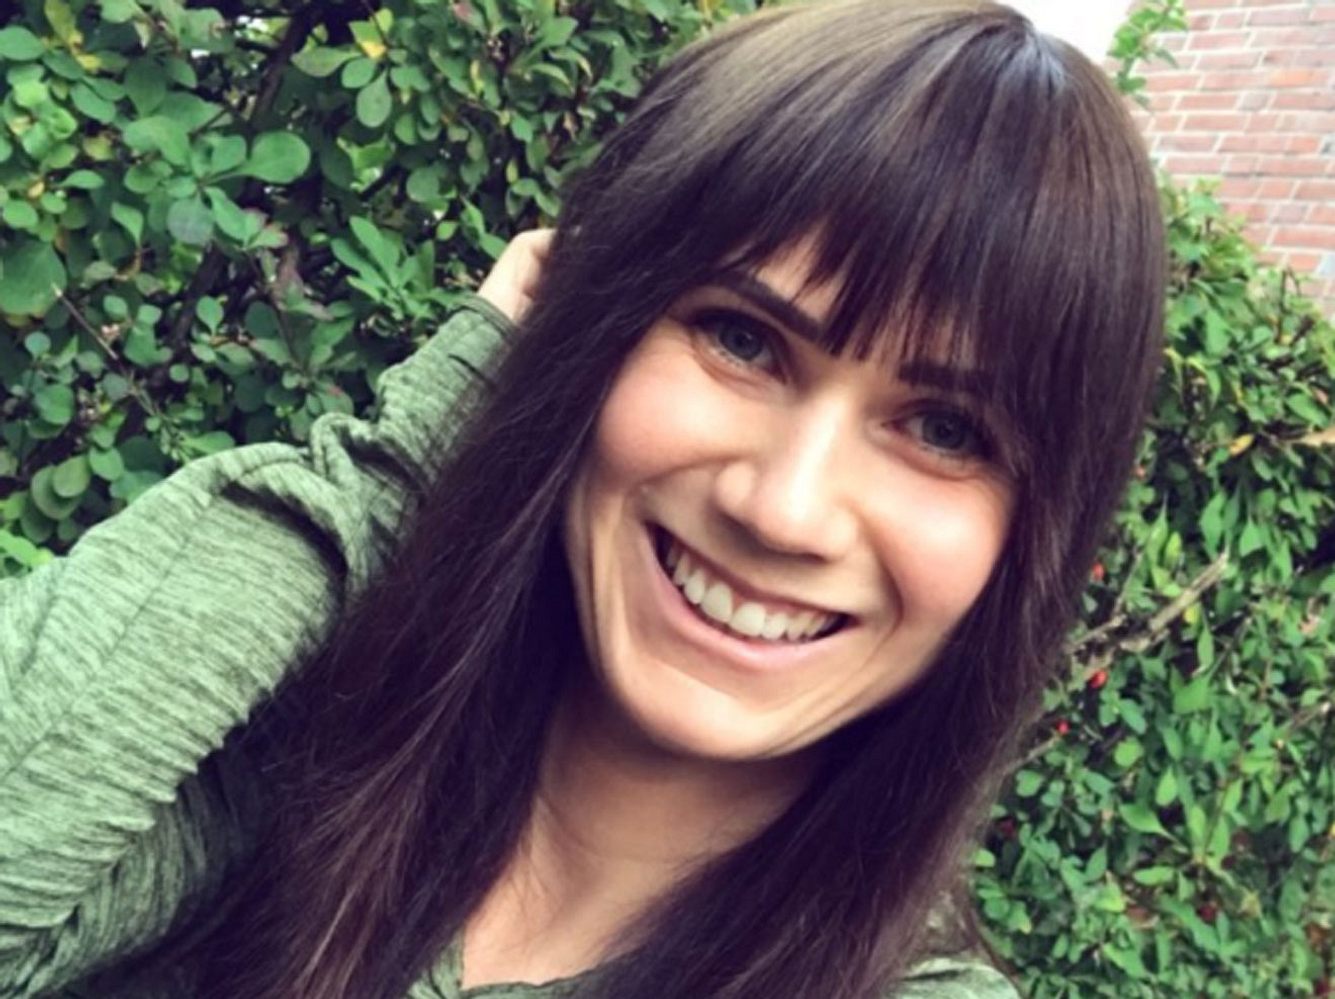 Bloggerin Louisa Dellert: Selbstliebe ist ein lebenslanger Prozess